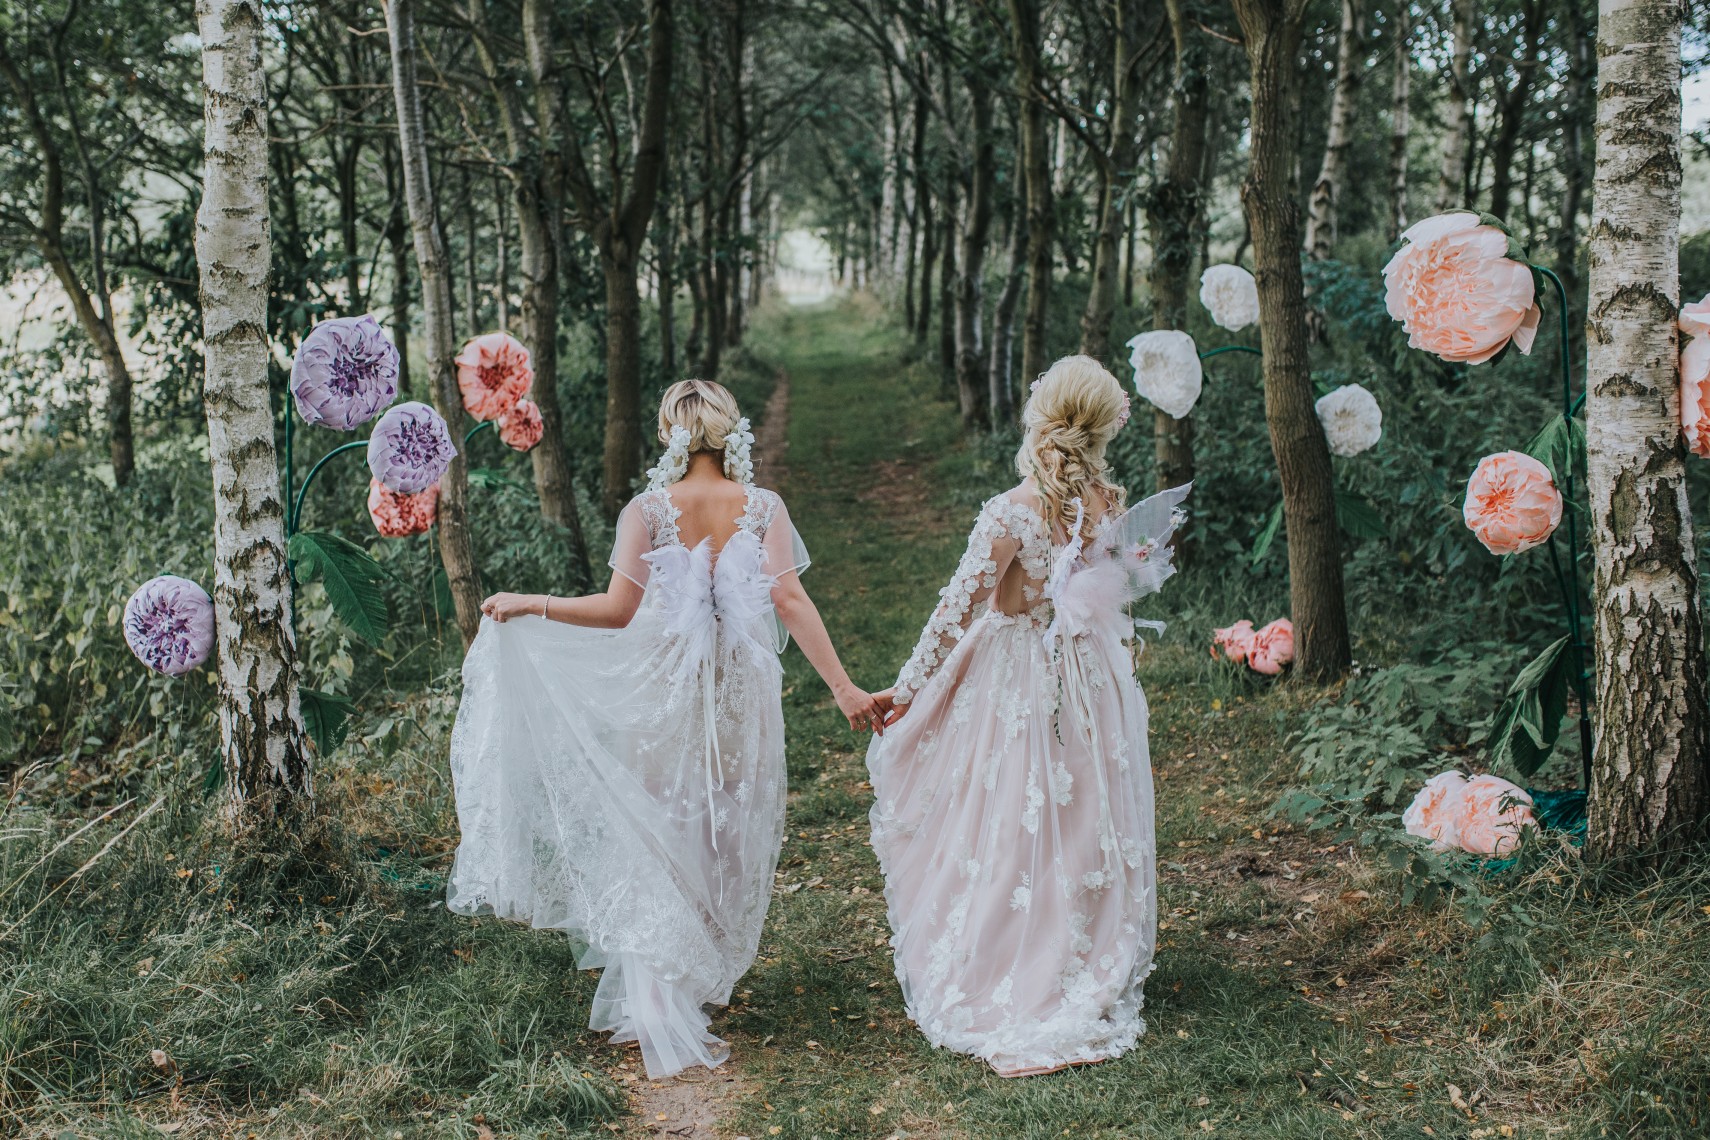 fairy wedding - whimsical wedding - magical wedding - elegant wedding dress - woodland wedding decor - forest wedding - wedding paper flowers